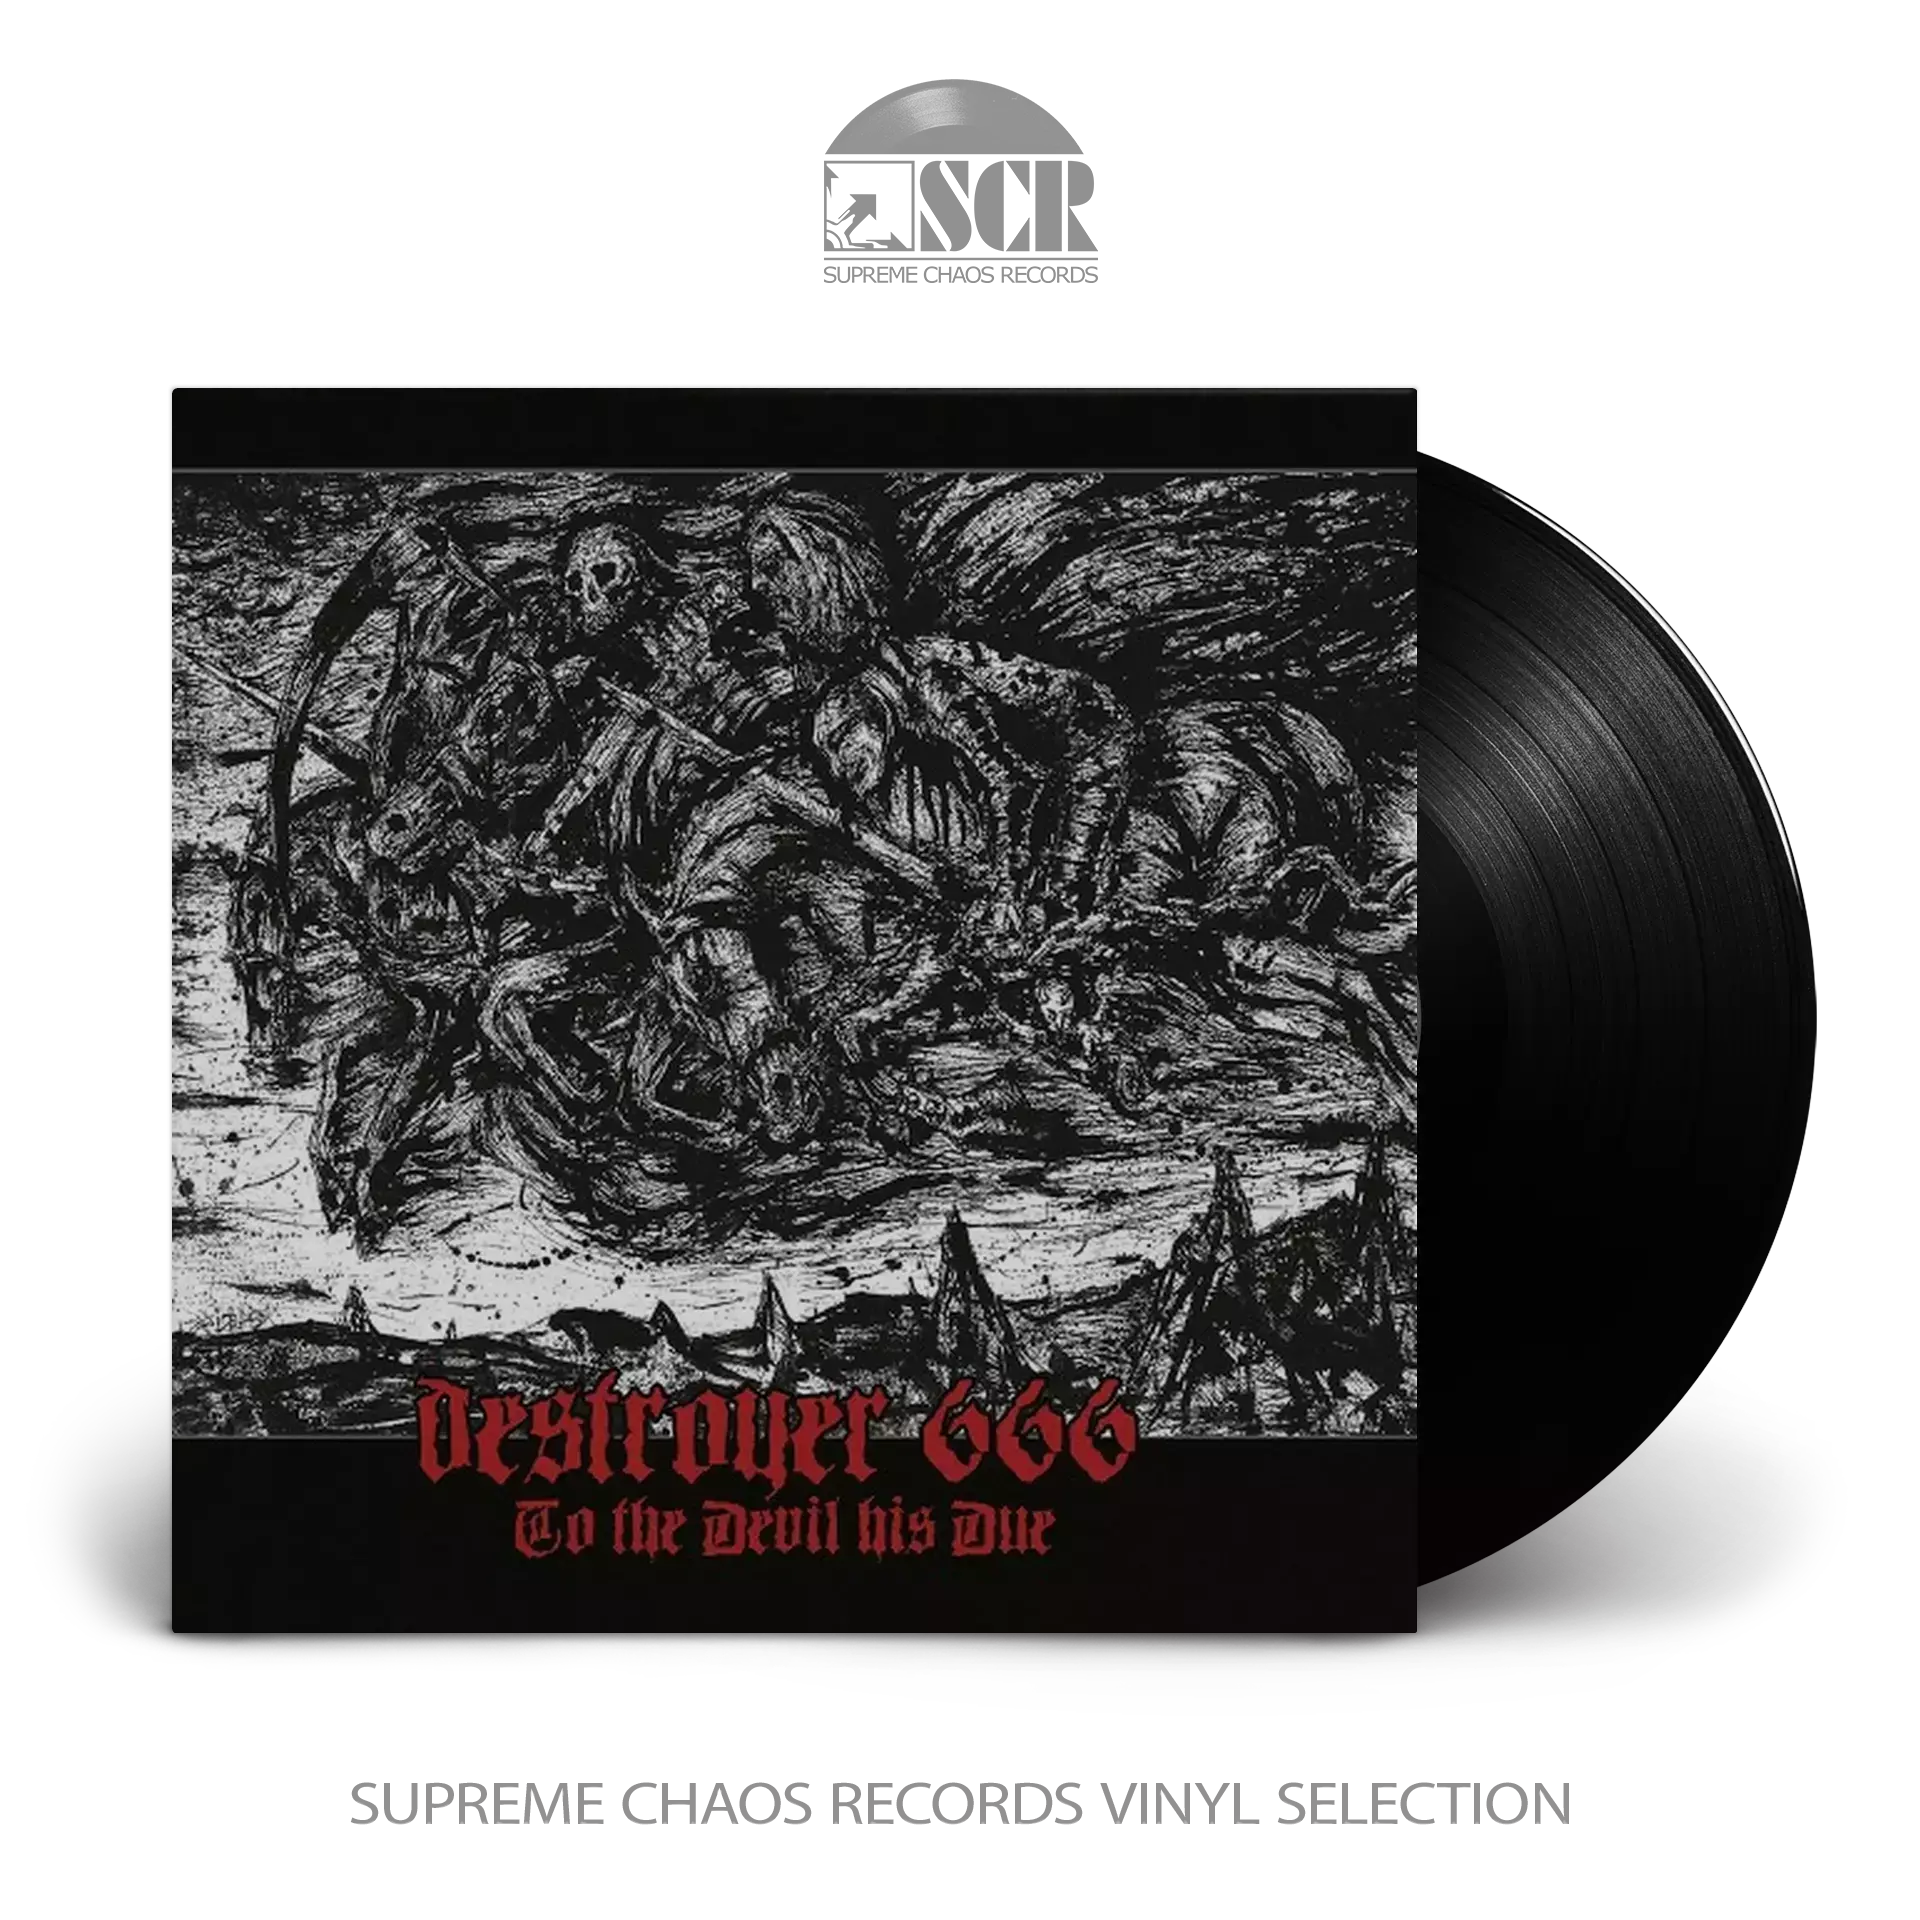 DESTRÖYER 666 - To The Devil His Due [BLACK LP]